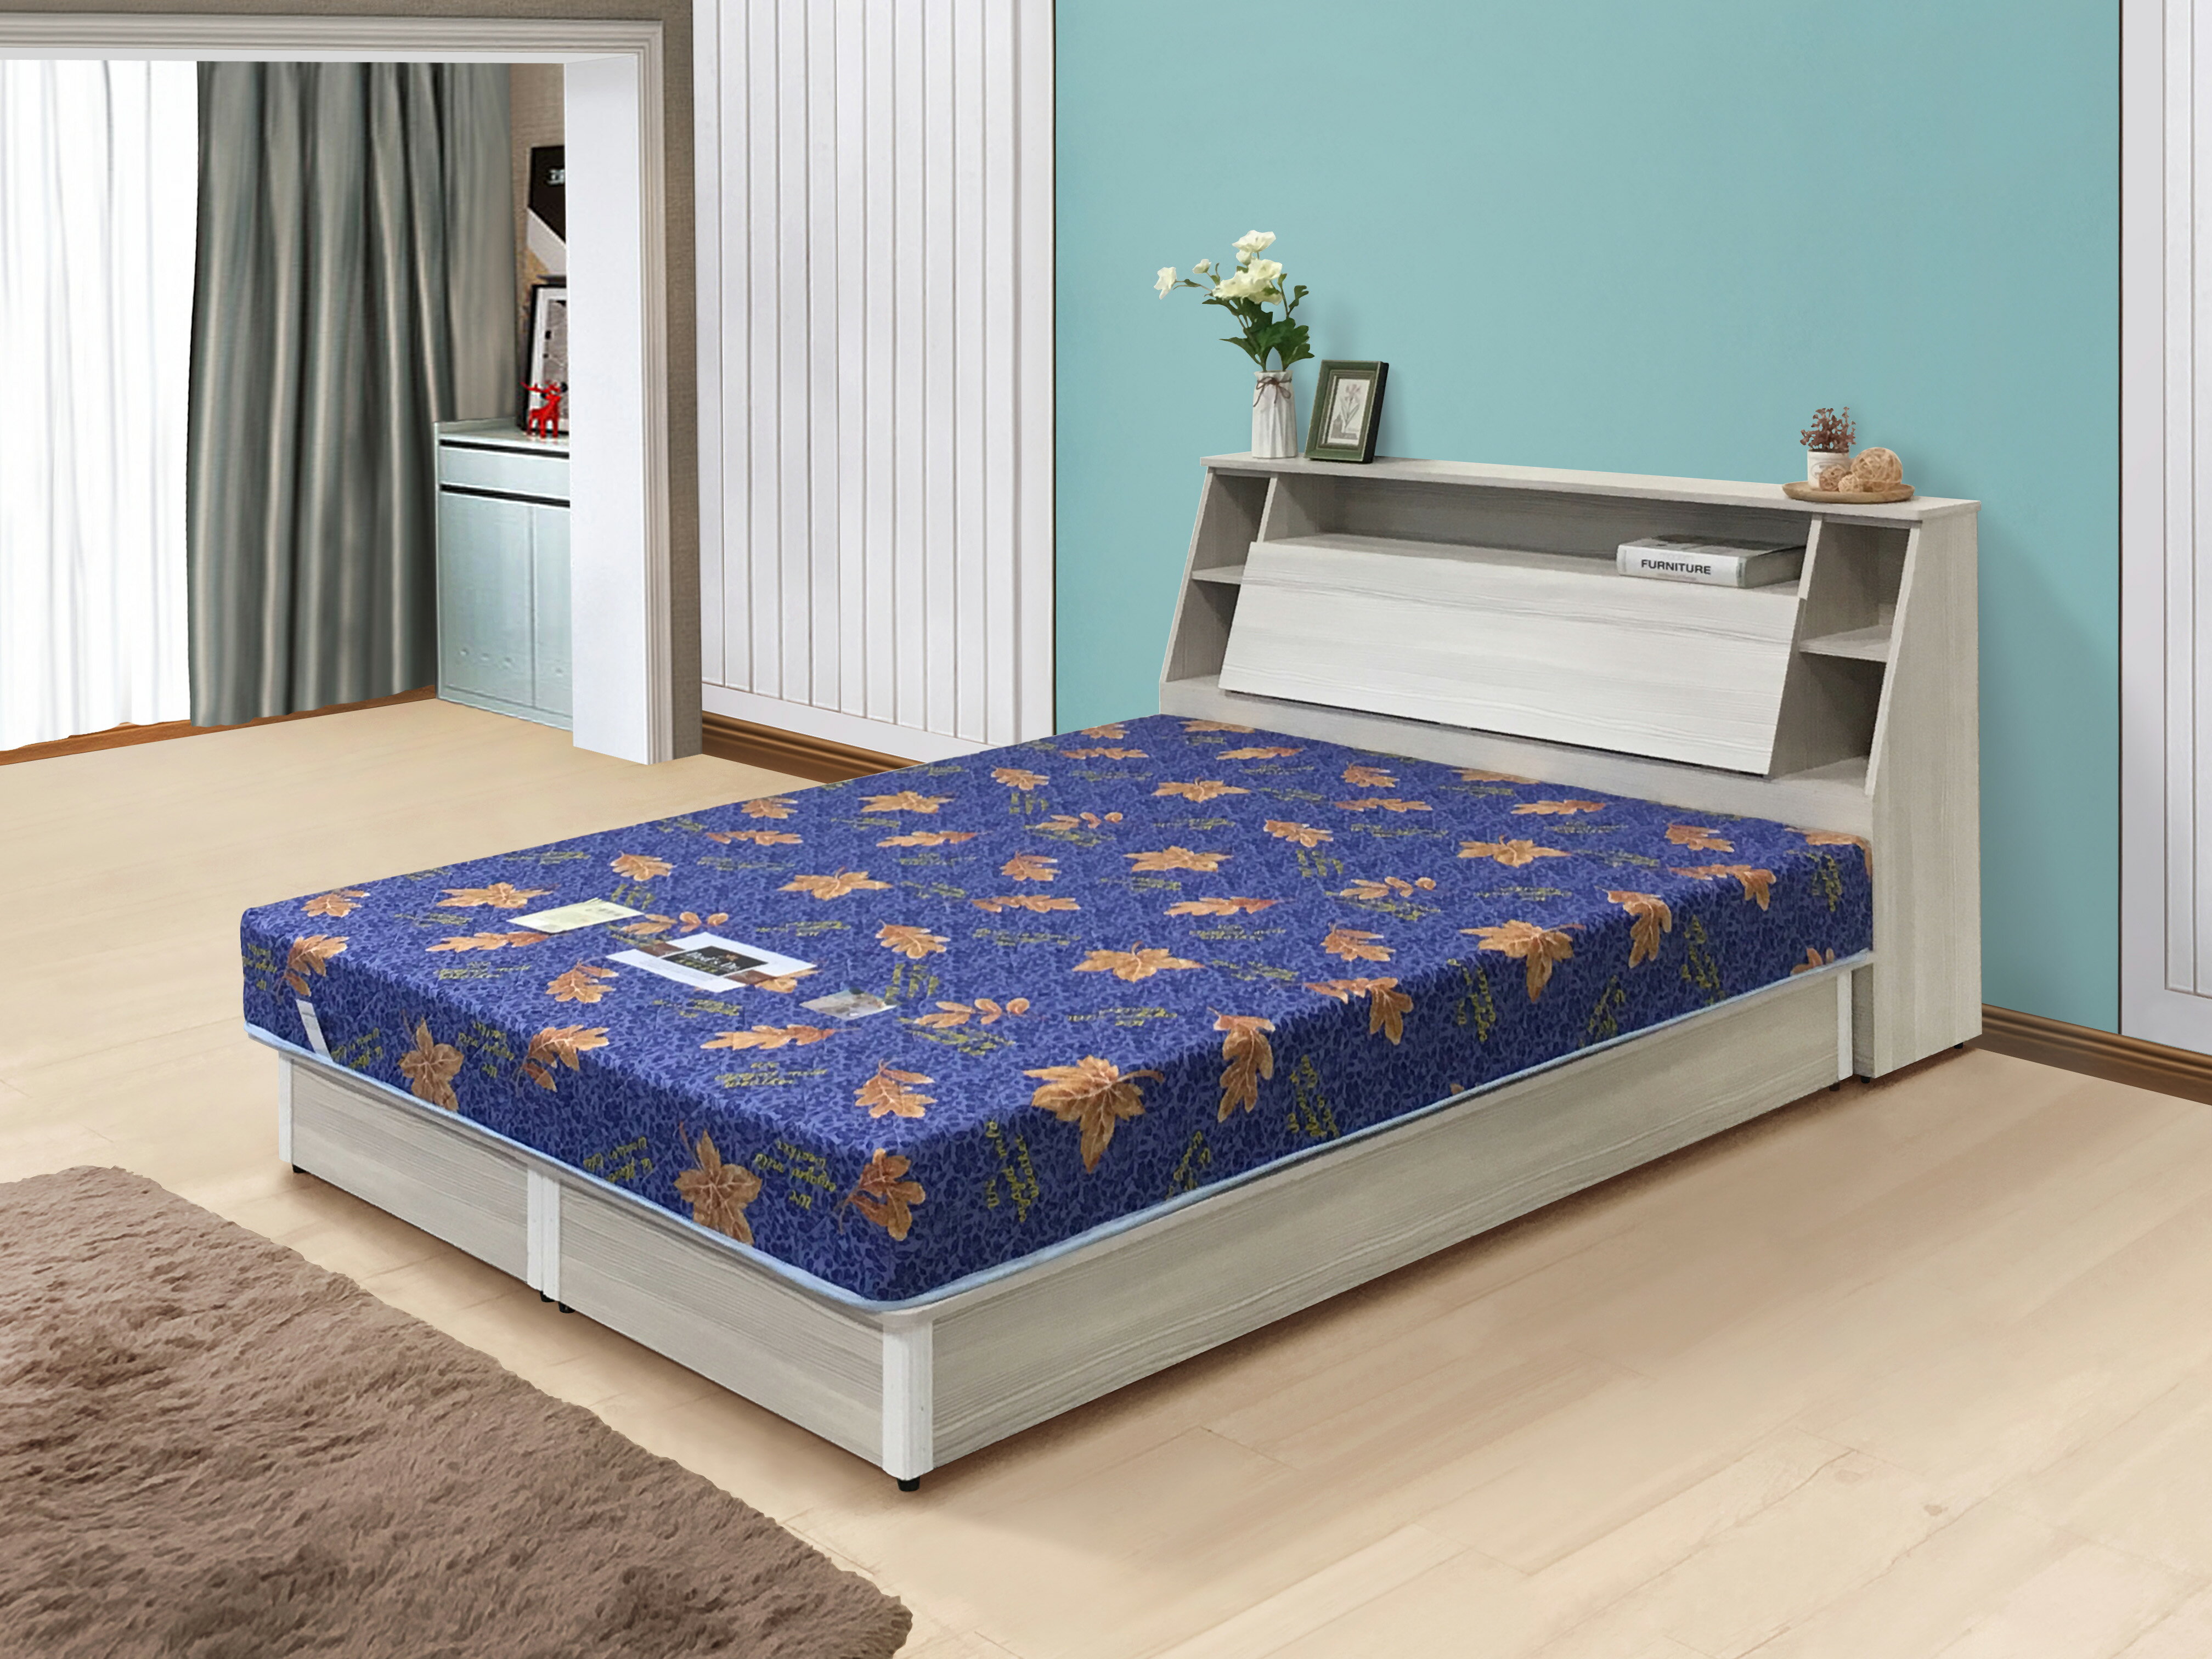 《特琳》 彈簧床 藍色 全新床墊 硬式床墊 五尺 六尺 2.6mm高碳鋼彈簧 冬夏蓆面 舒柔緹花布 高品質 舒適 【新生活家具】